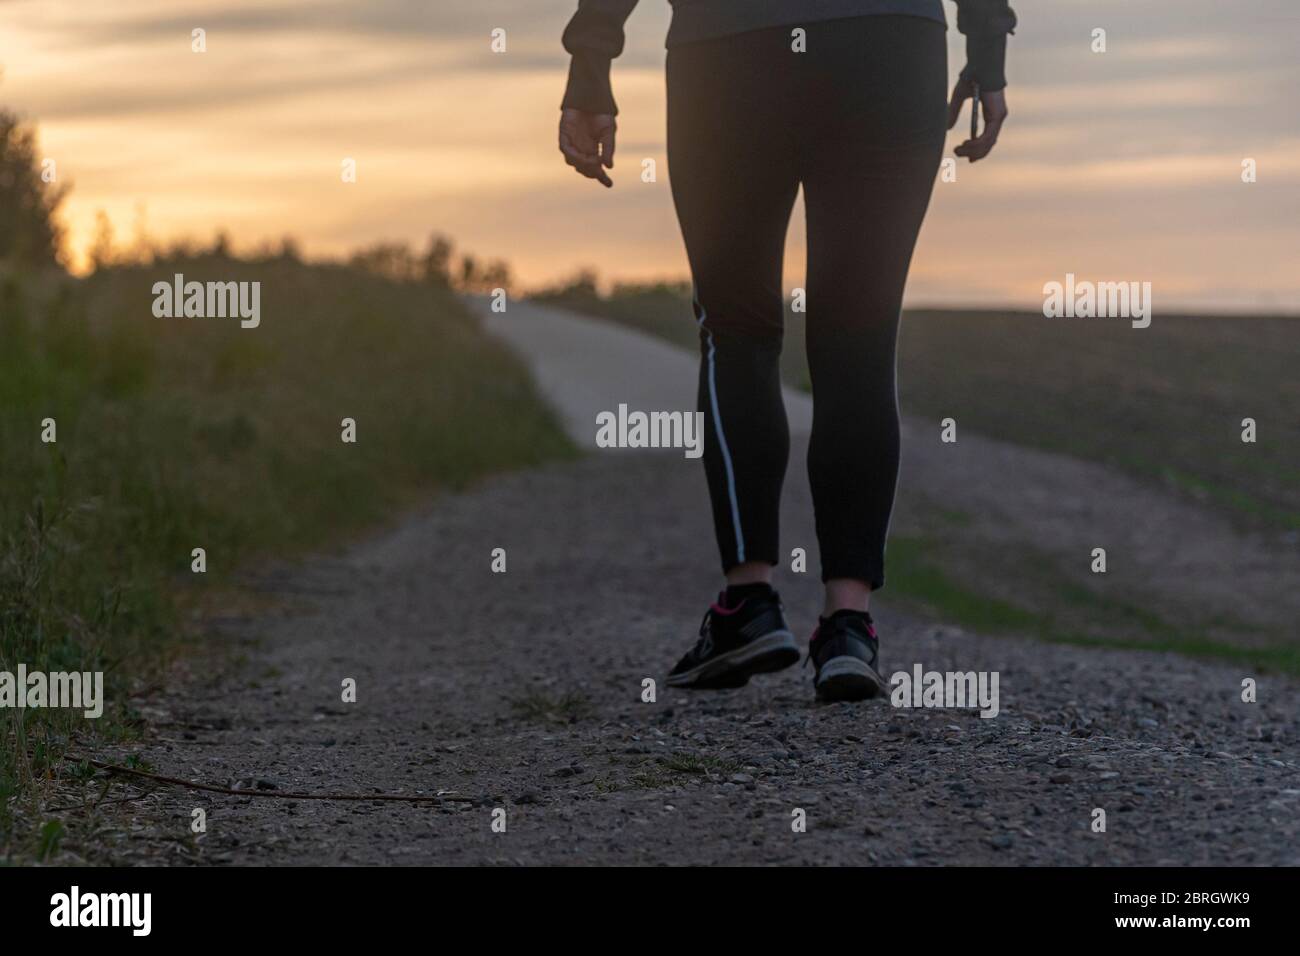 La mitad inferior de una dama tomando un descanso caminando durante su jogging de noche Foto de stock